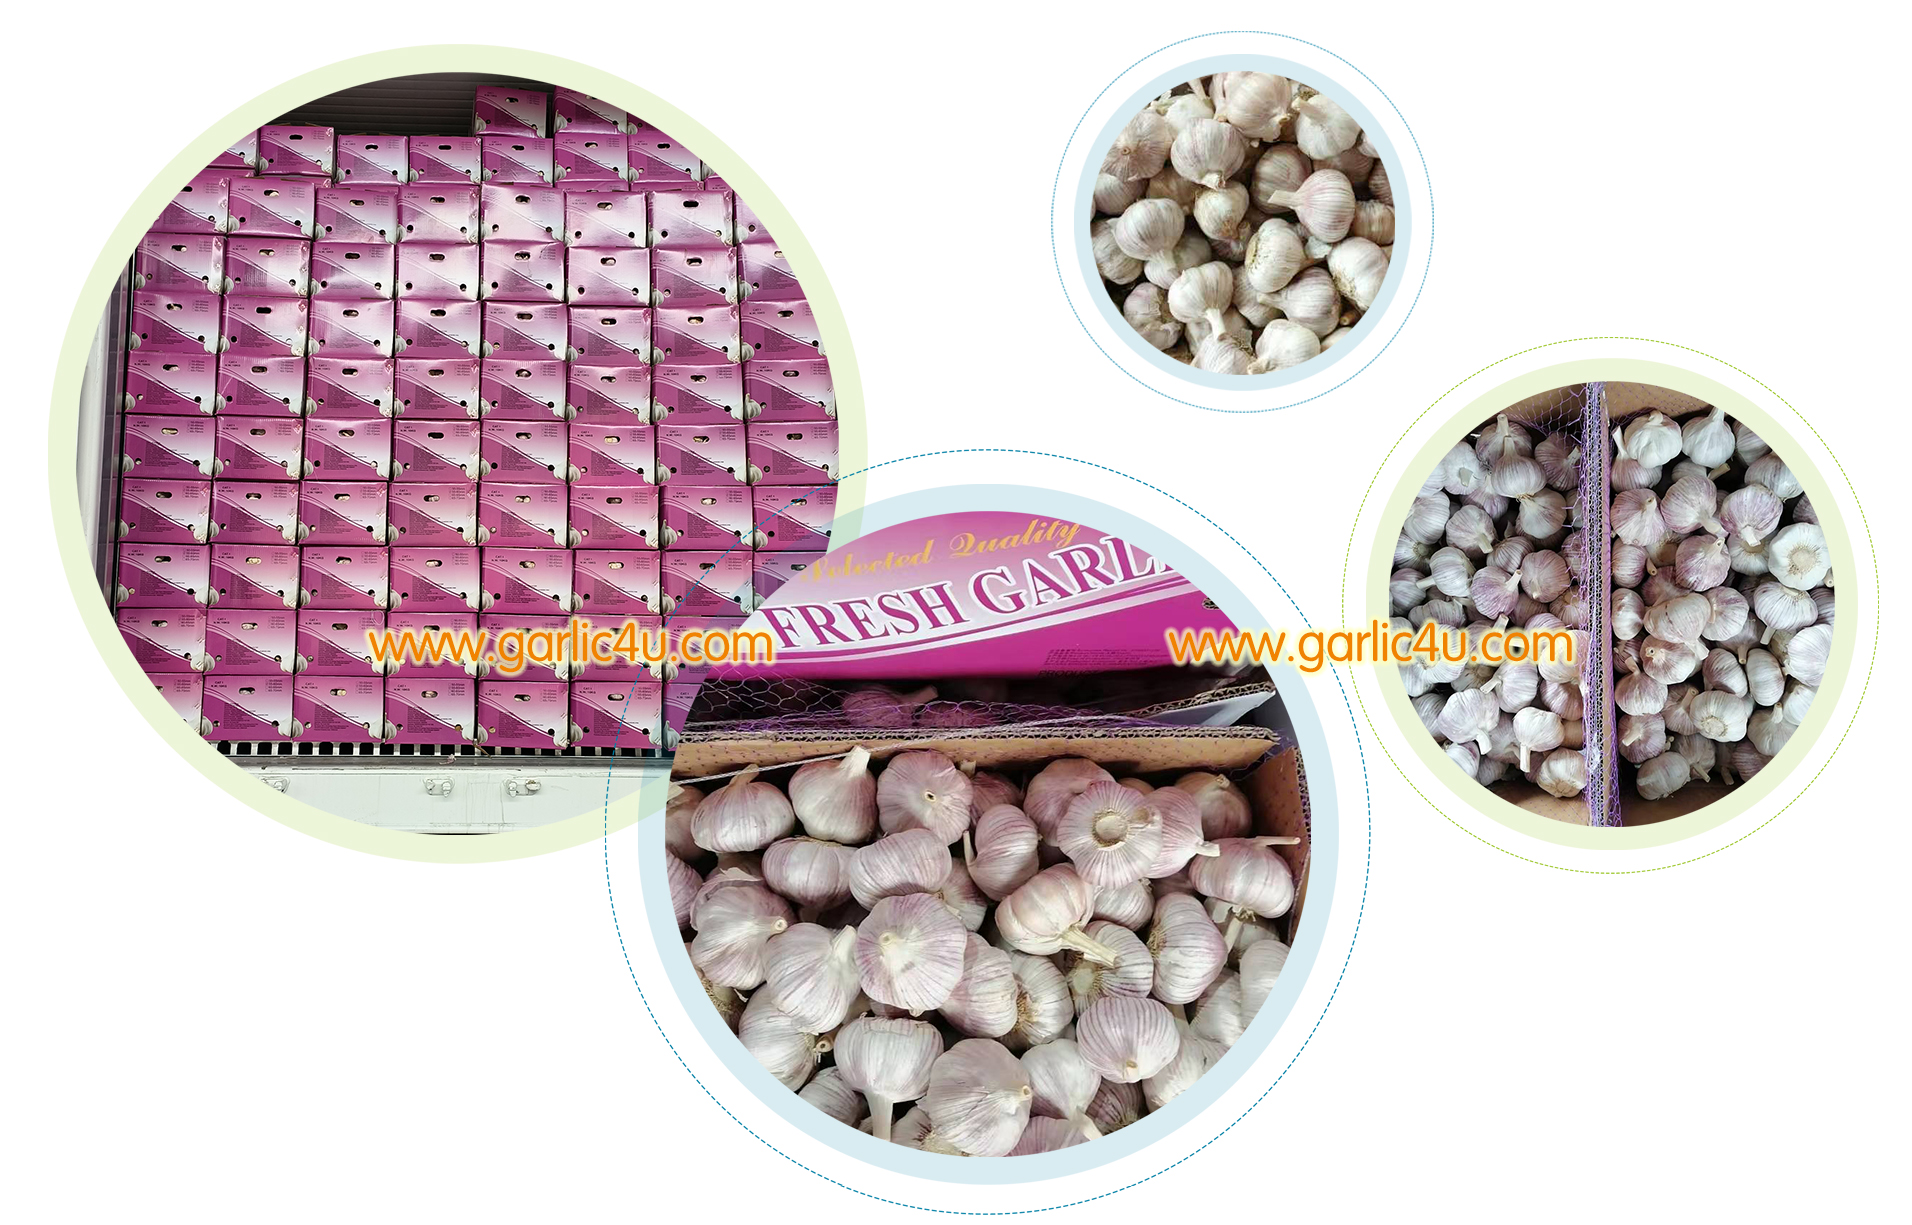 garlic supplier